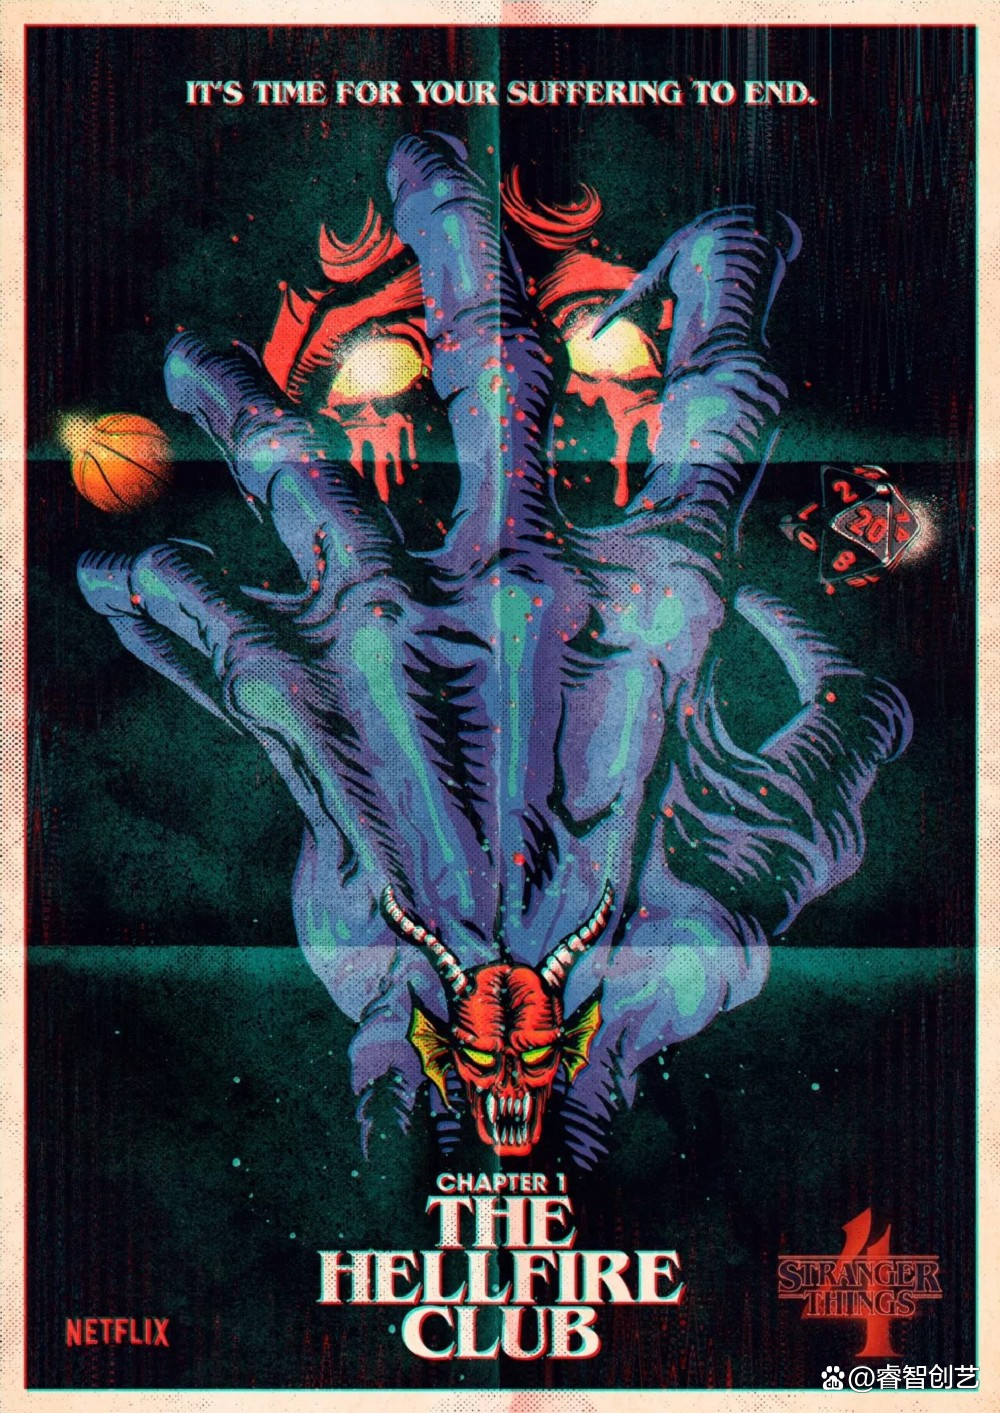 巴西设计师Butcher Billy操刀《怪奇物语4》创意视觉海报